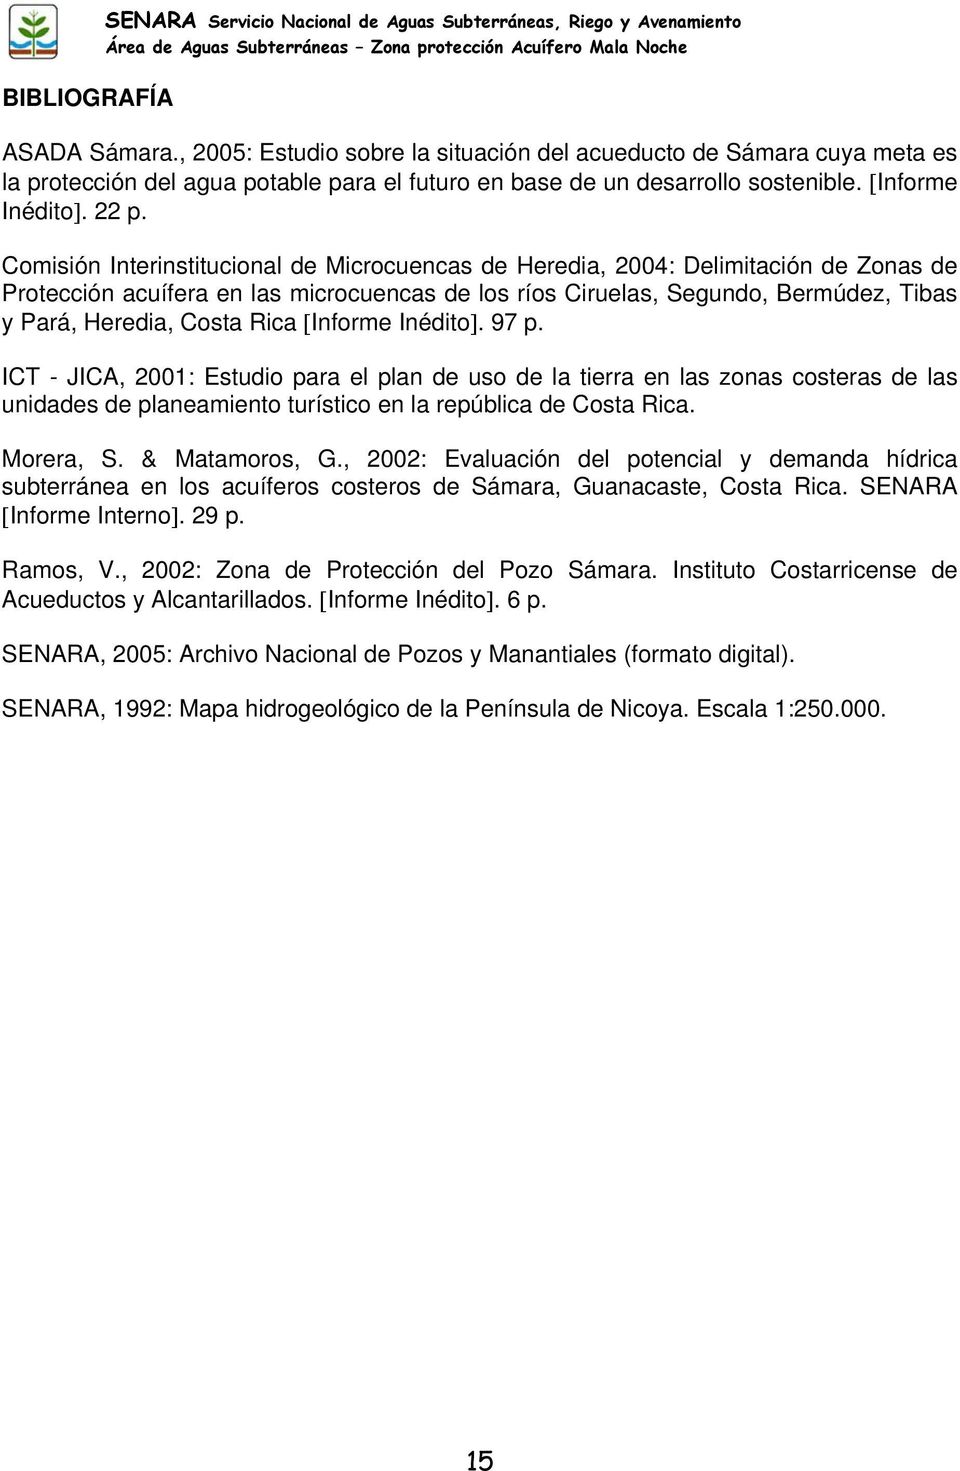 Comisión Interinstitucional de Microcuencas de Heredia, 2004: Delimitación de Zonas de Protección acuífera en las microcuencas de los ríos Ciruelas, Segundo, Bermúdez, Tibas y Pará, Heredia, Costa